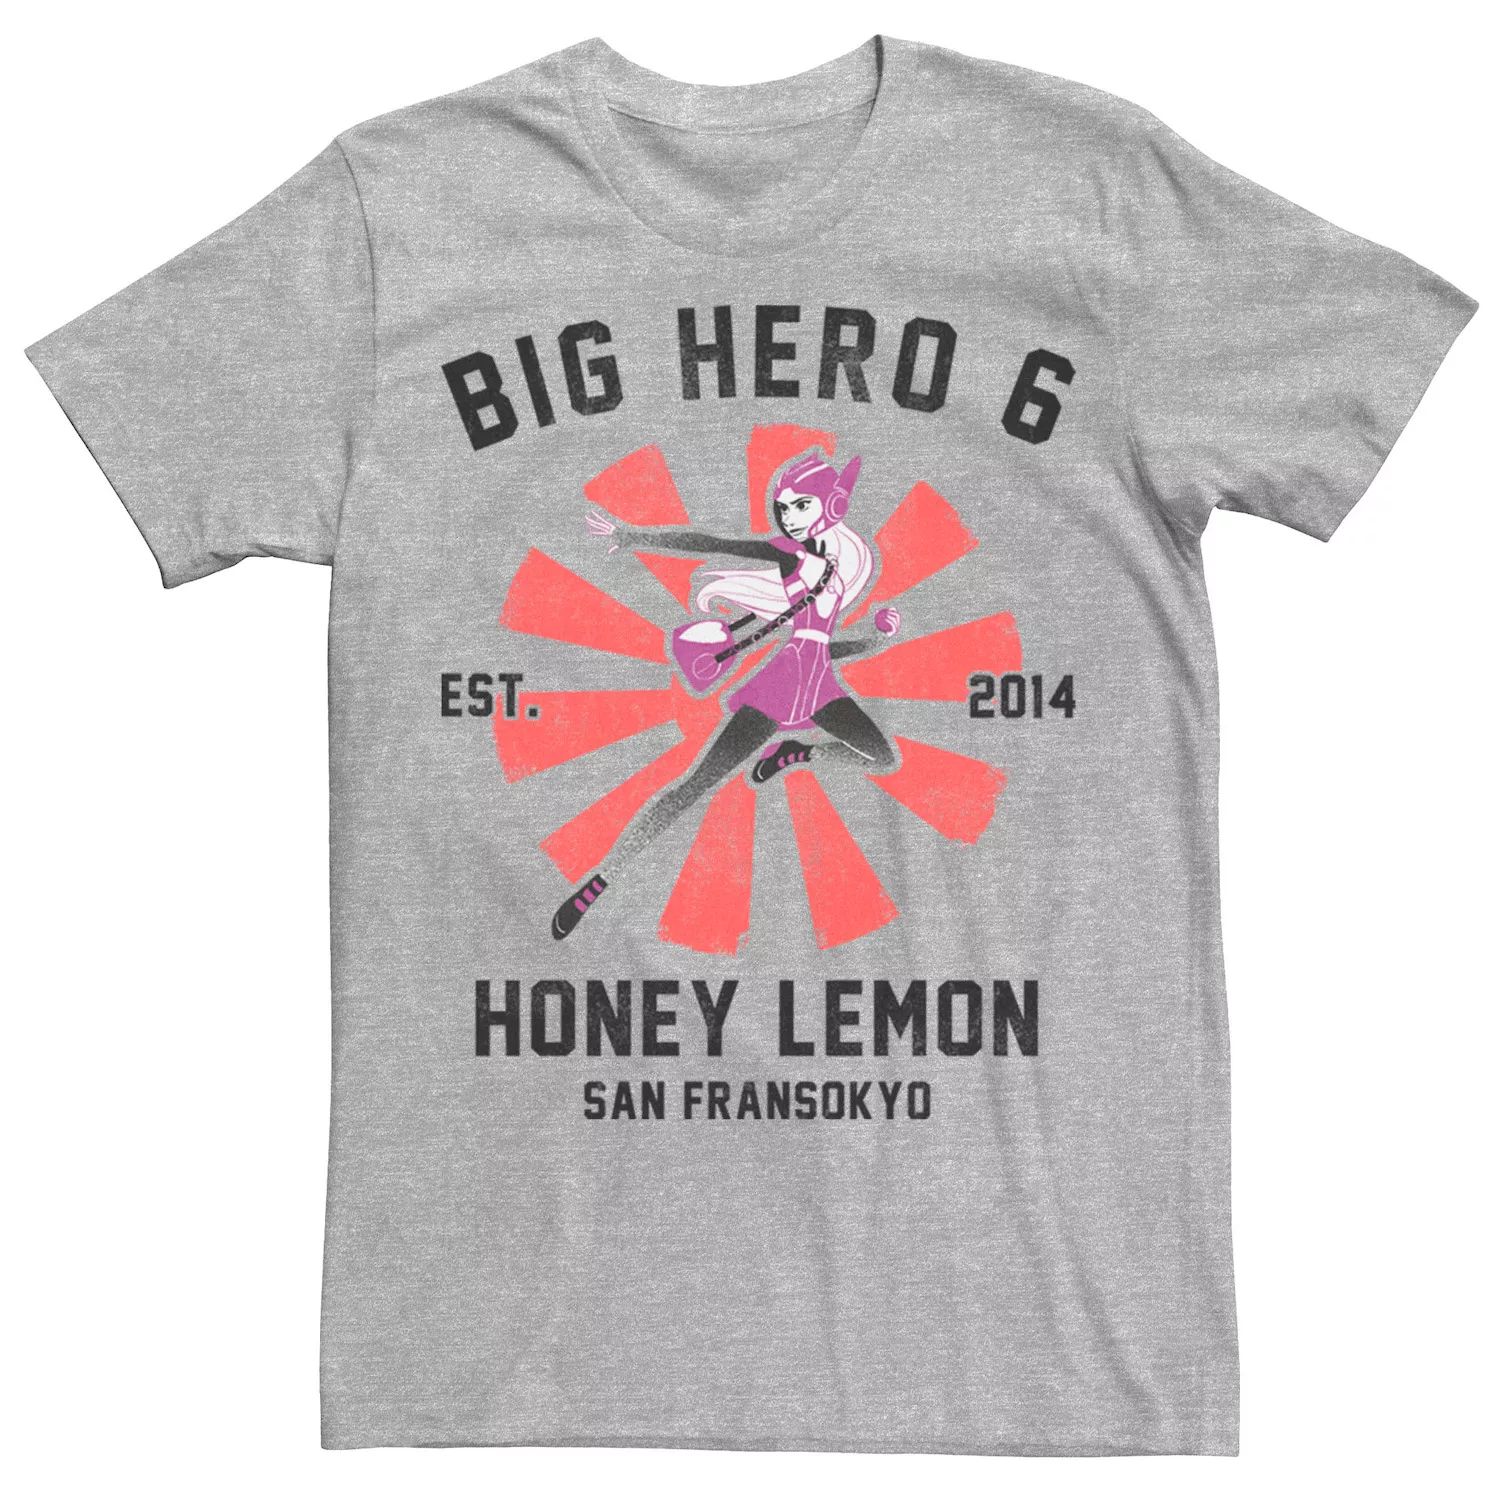 Мужская футболка с плакатом Big Hero 6 Honey Lemon Disney